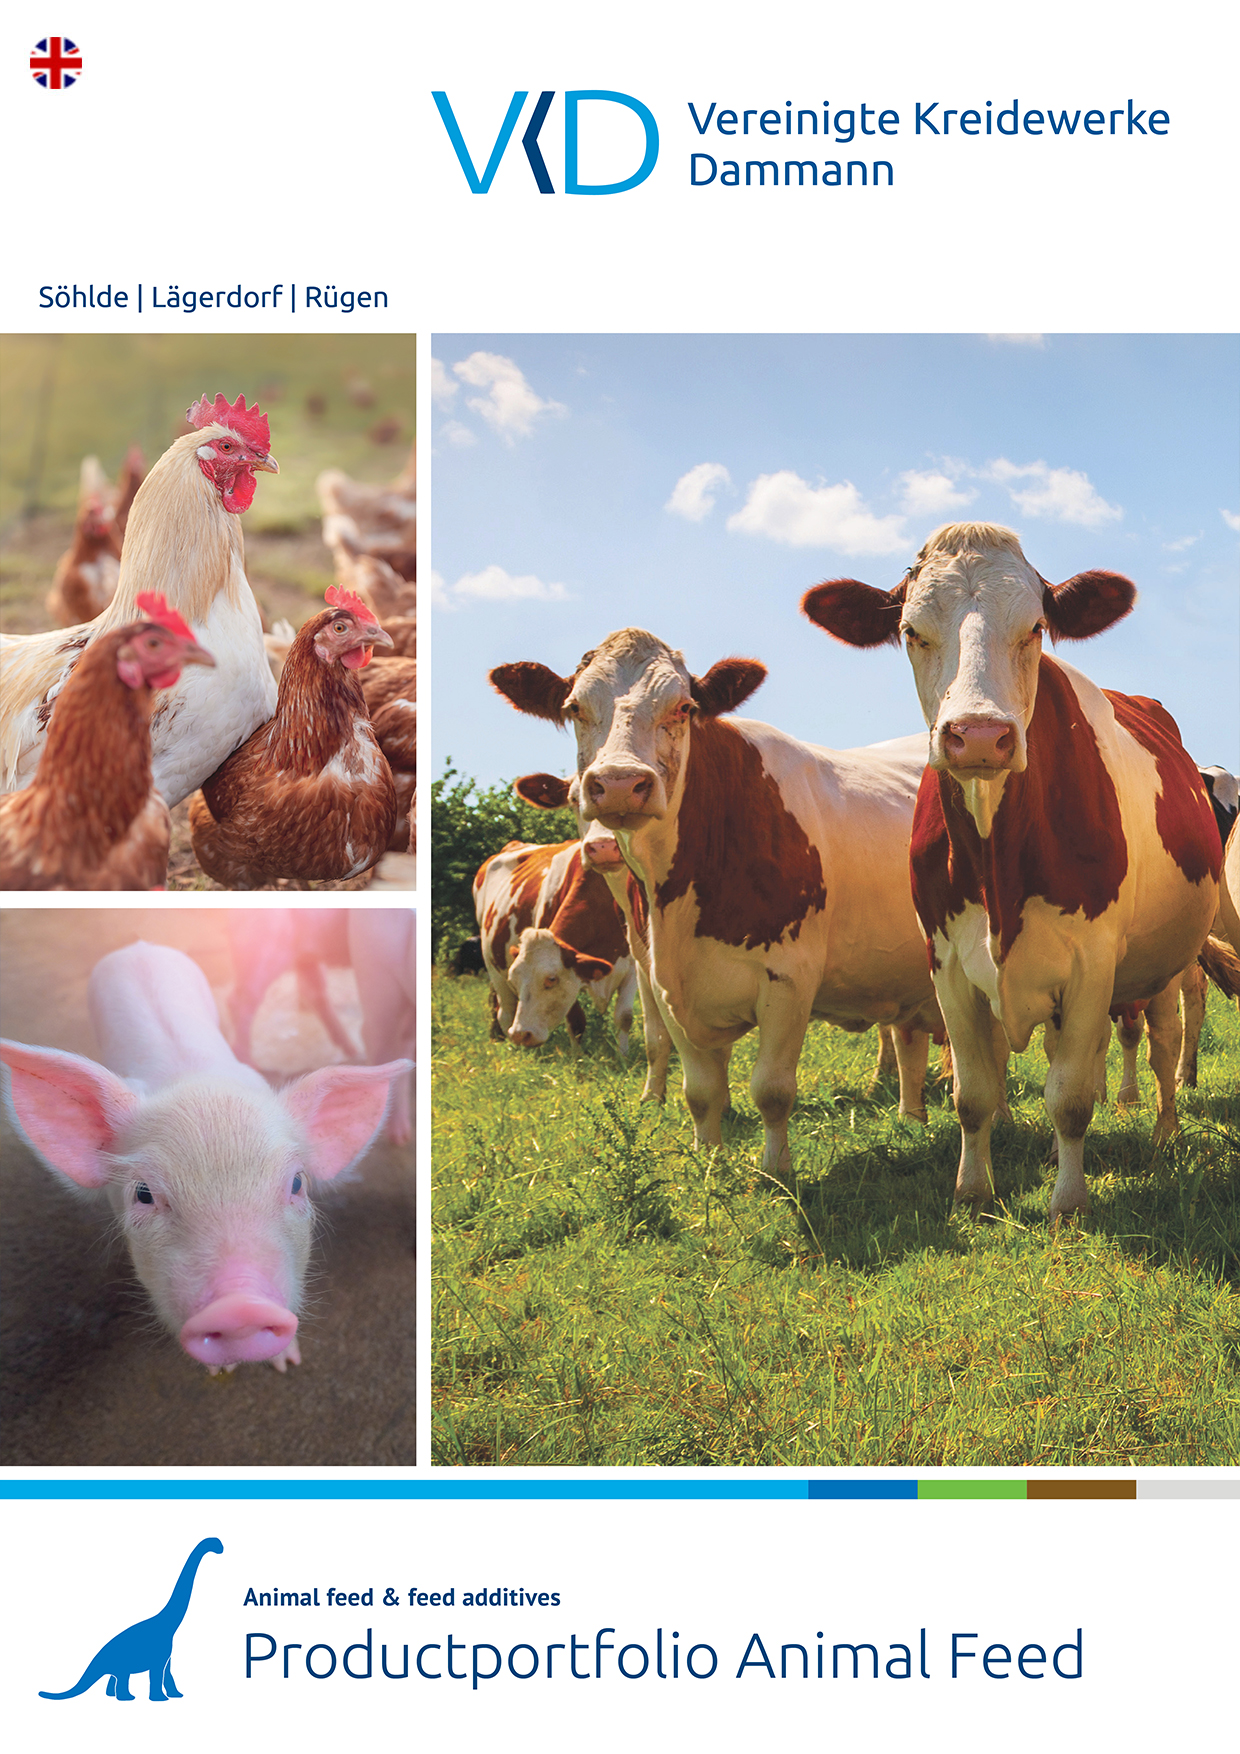 Productportfolio Animal Feed - Vereinigte Kreidewerke Dammann